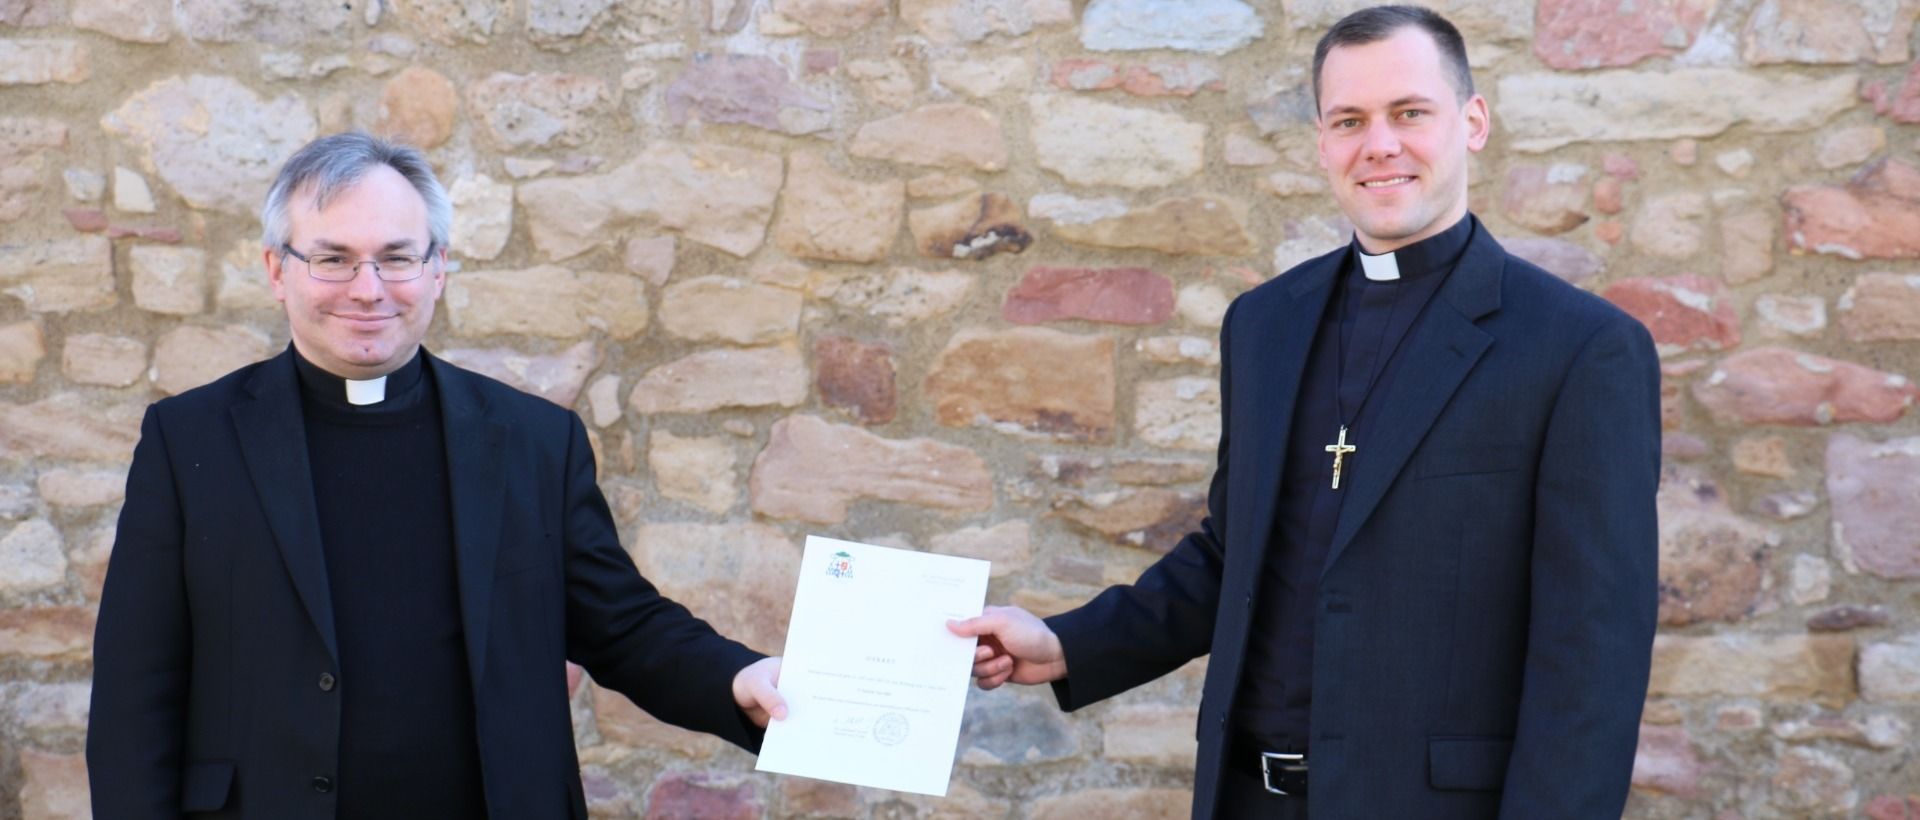 Pater Vey ist neuer Diözesanrichter im Bistum Fulda   